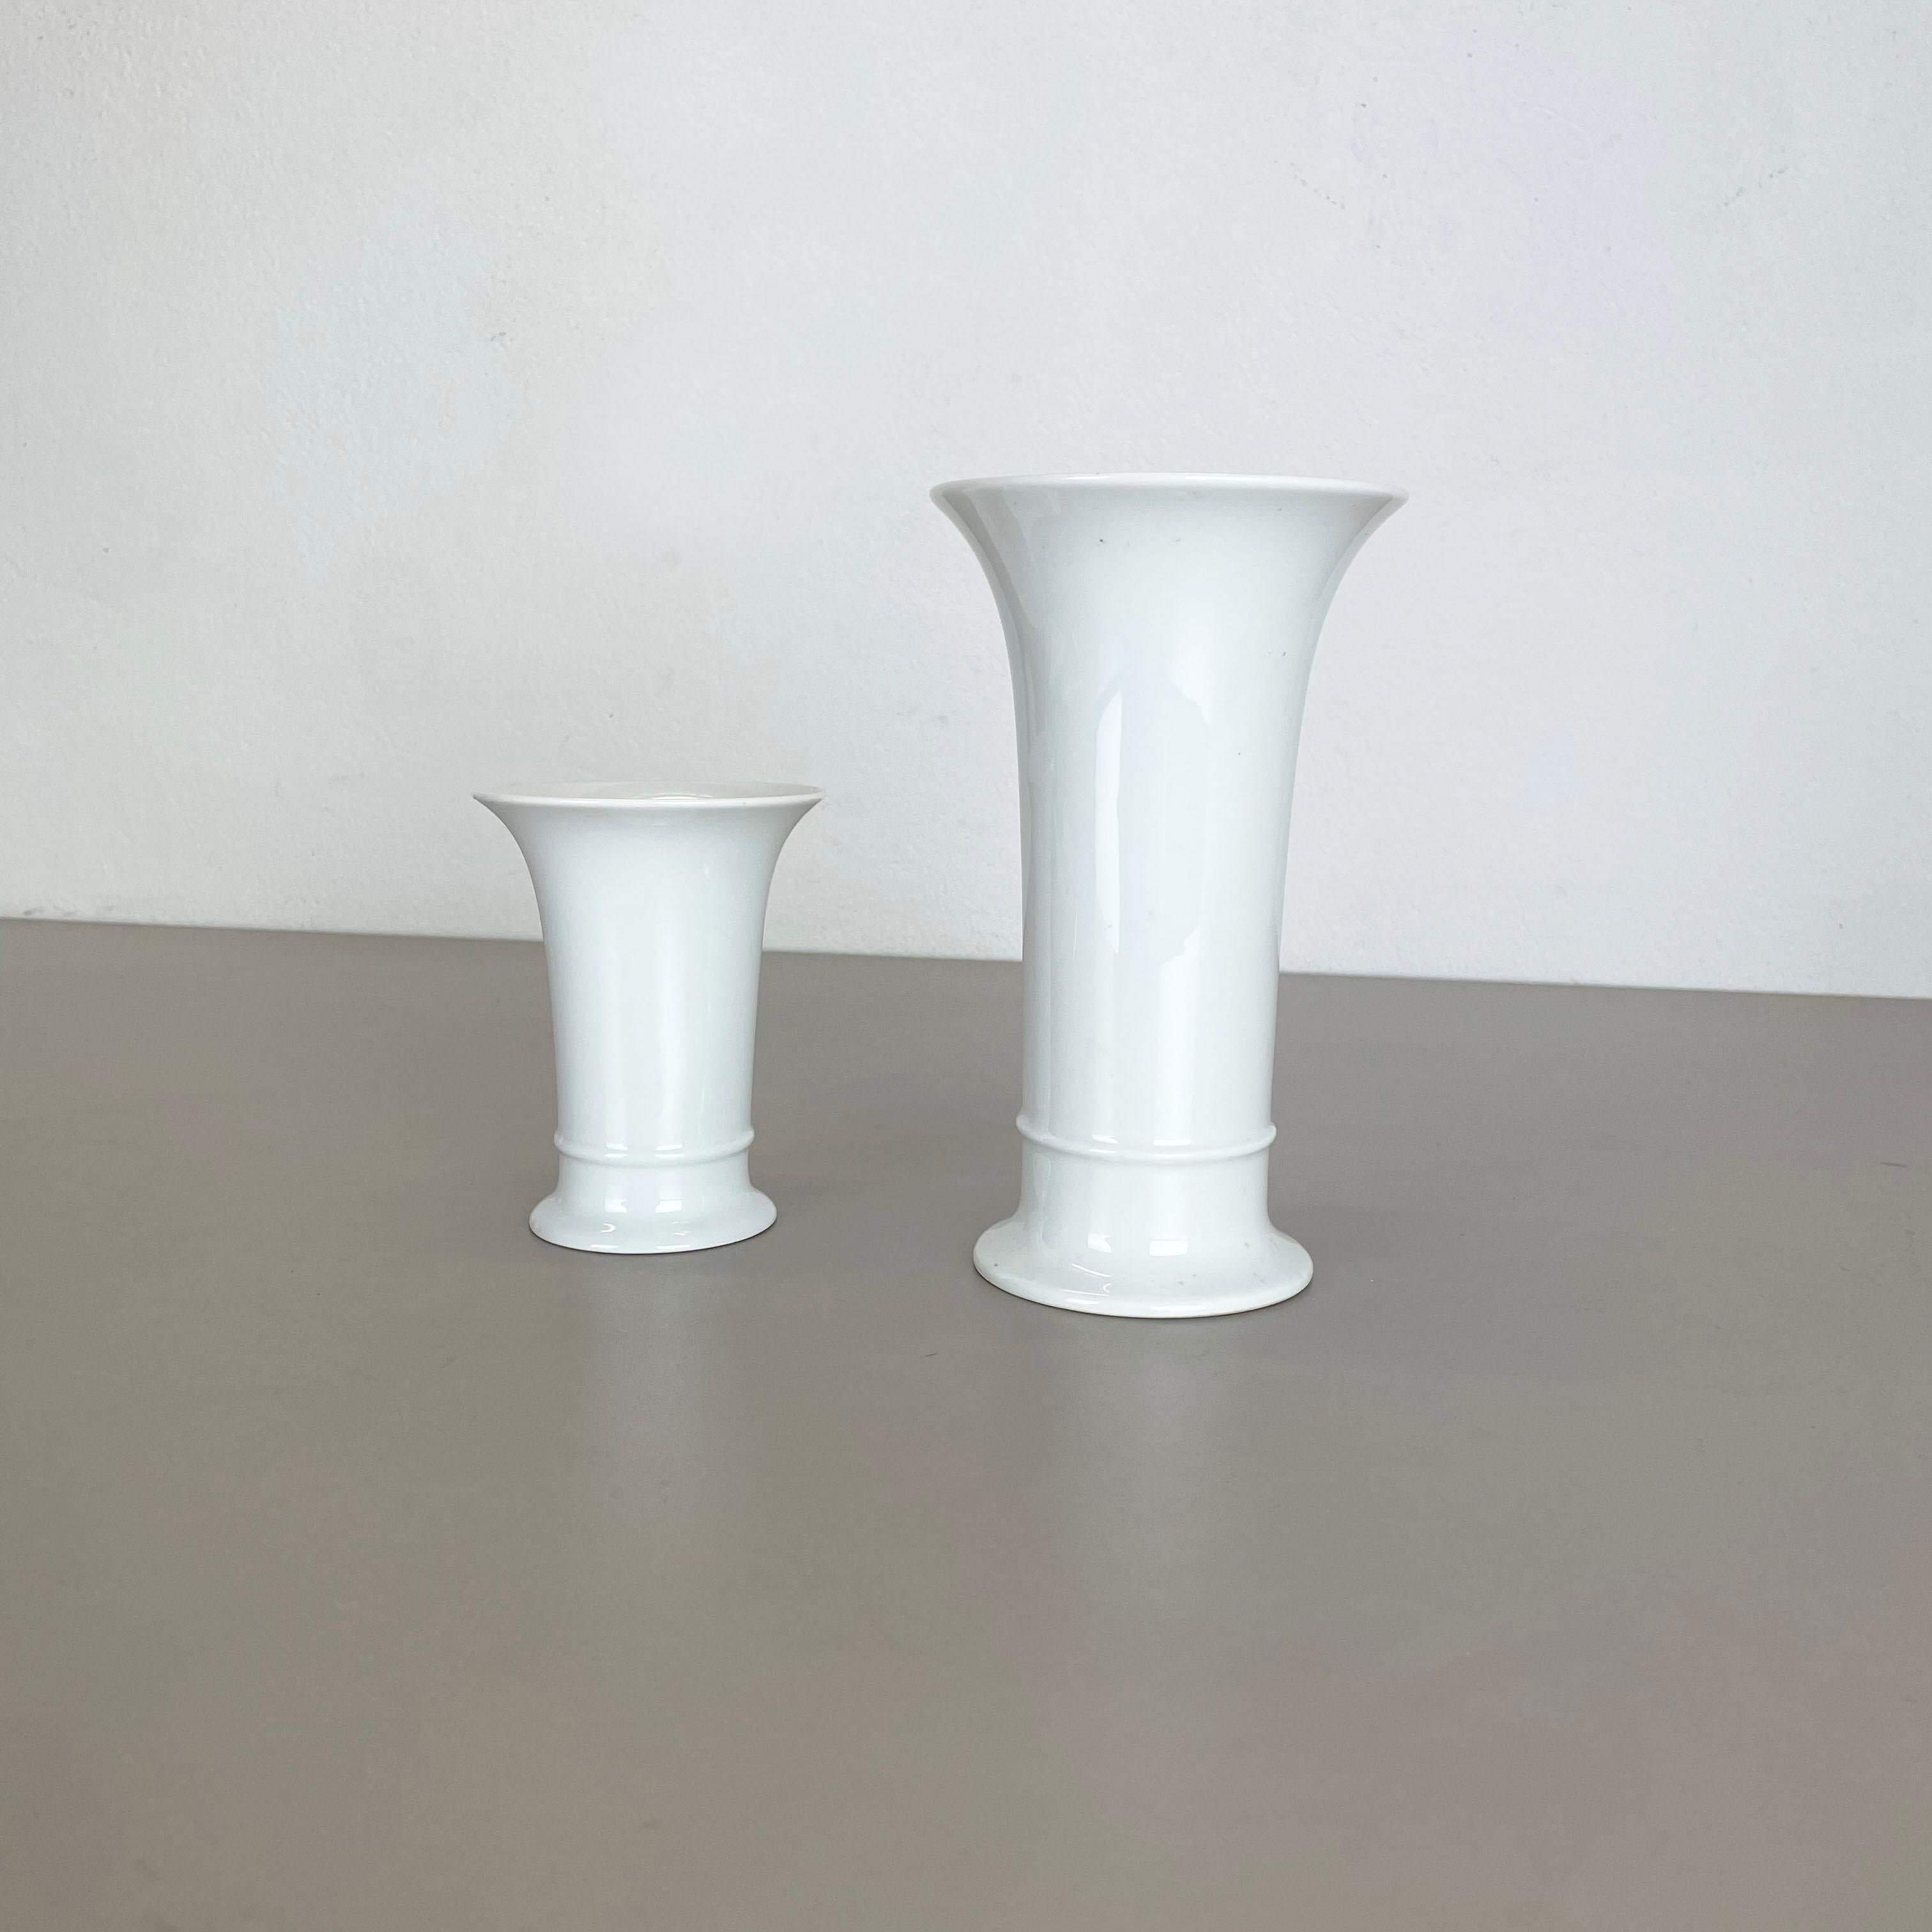 Artikel:

Op Art Porzellanvase 2er-Set


Produzent:

AK Kaiser, Deutschland


Beschreibung:

Diese originale vintage OP Art Vase wurde in den 1970er Jahren in Deutschland hergestellt. Sie ist aus Porzellan mit einer geradlinigen